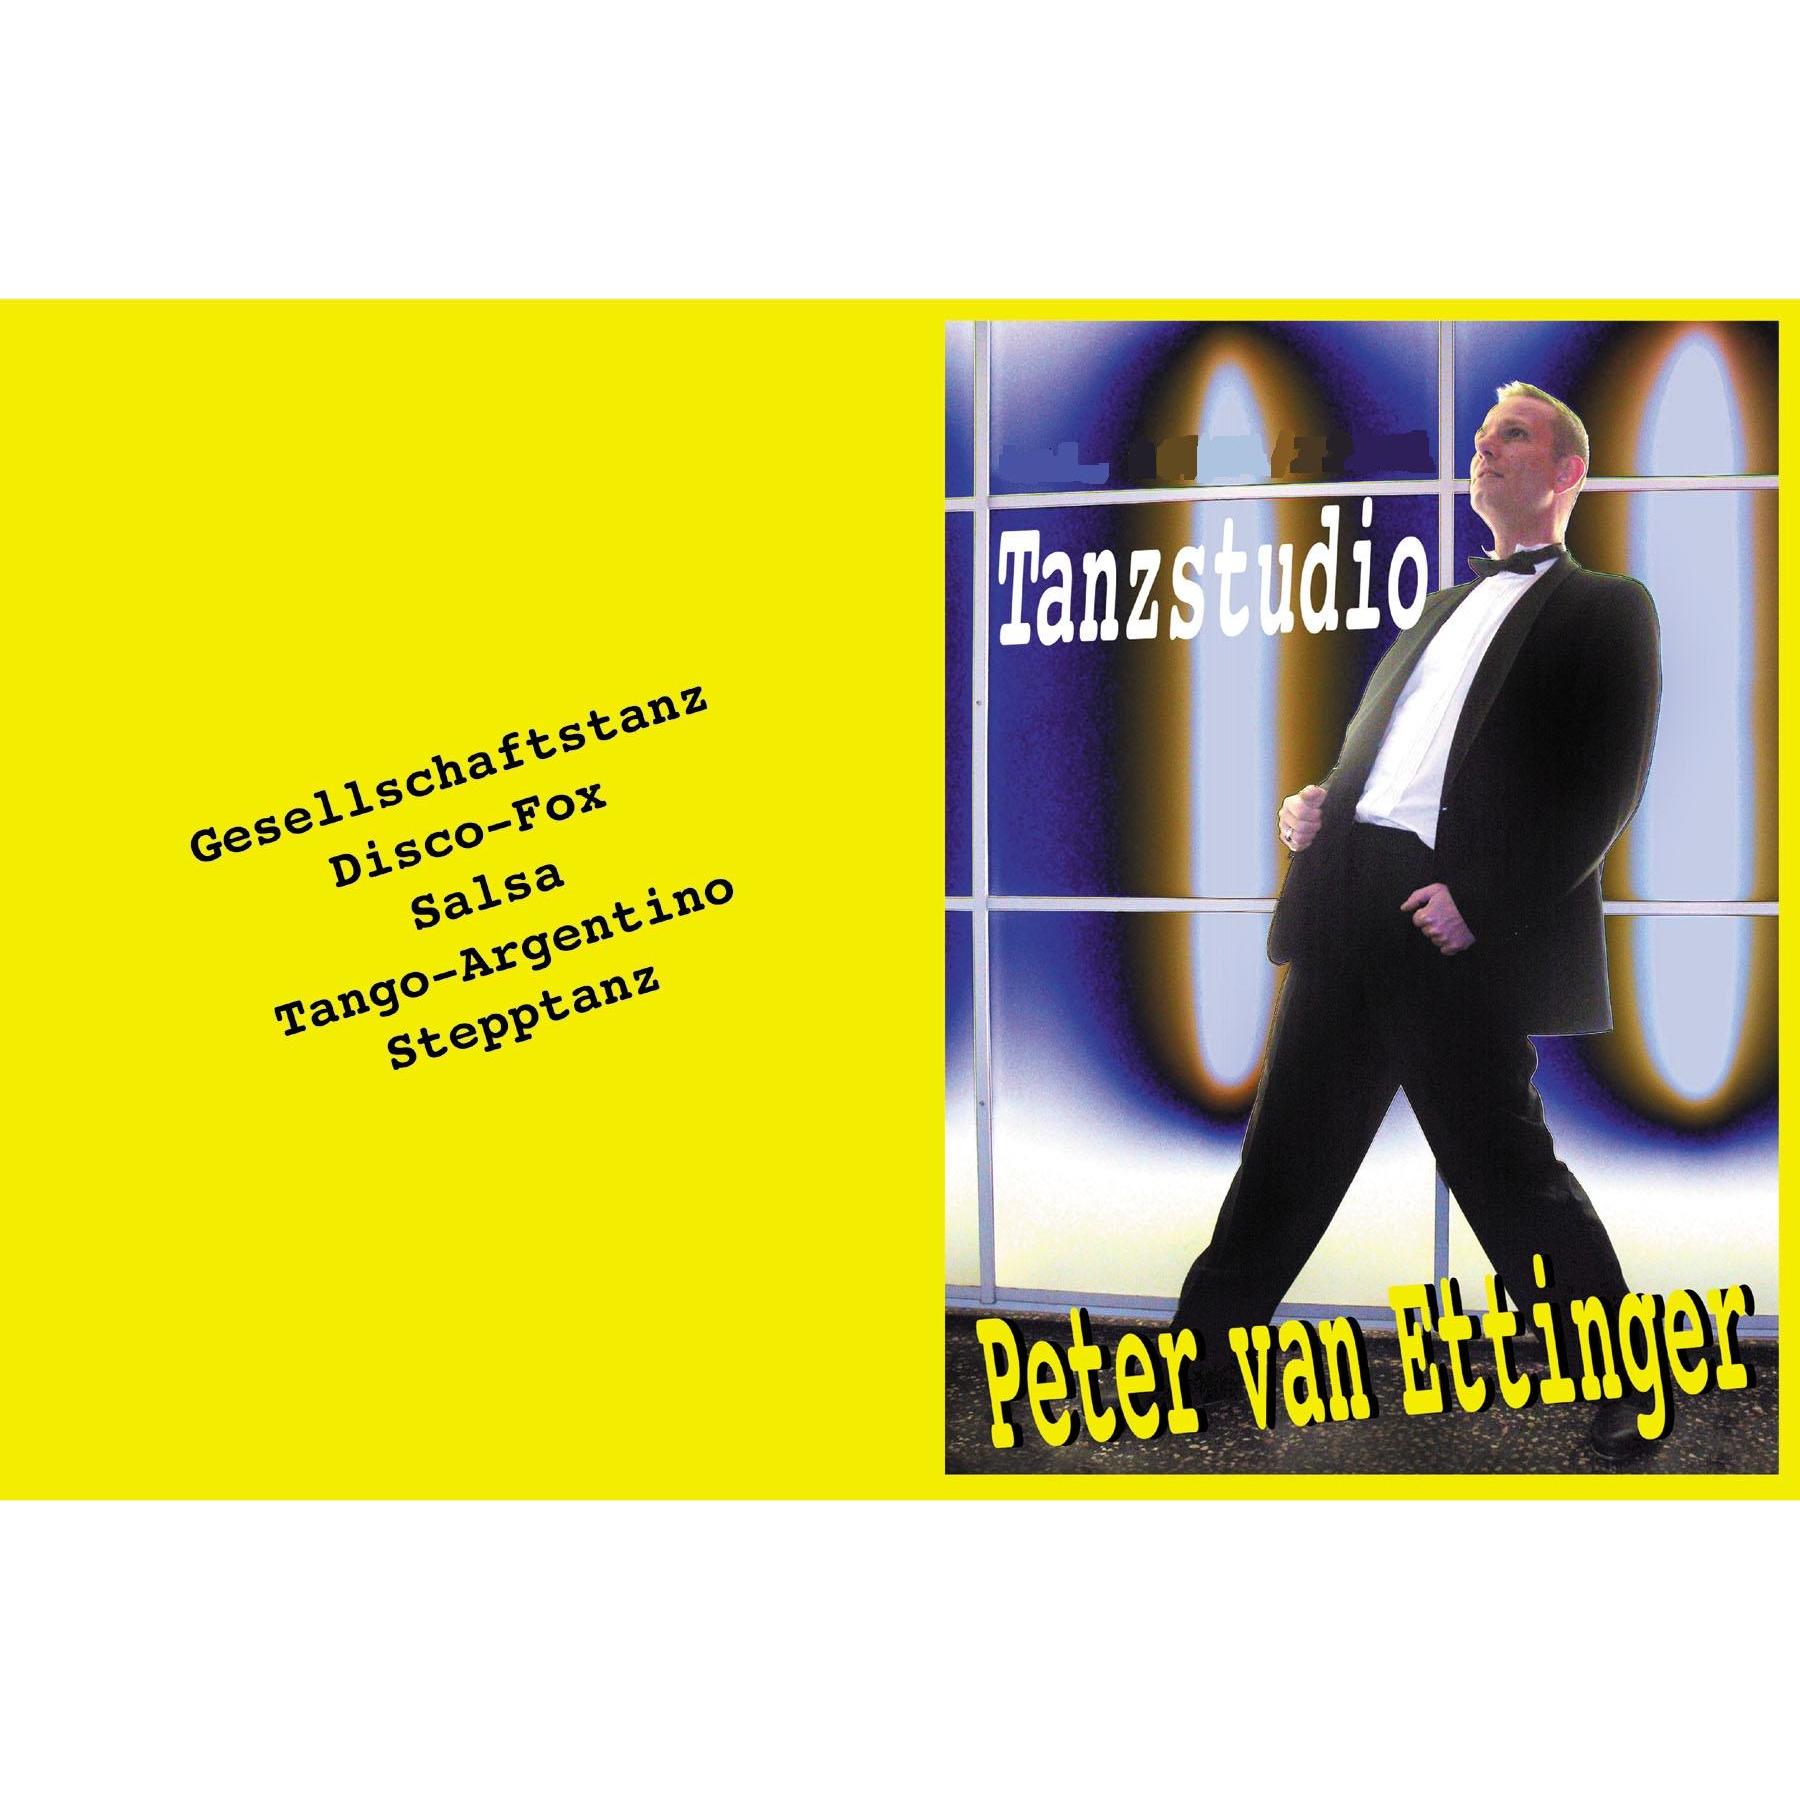 Tanzstudio Peter van Ettinger in Aschaffenburg - Logo